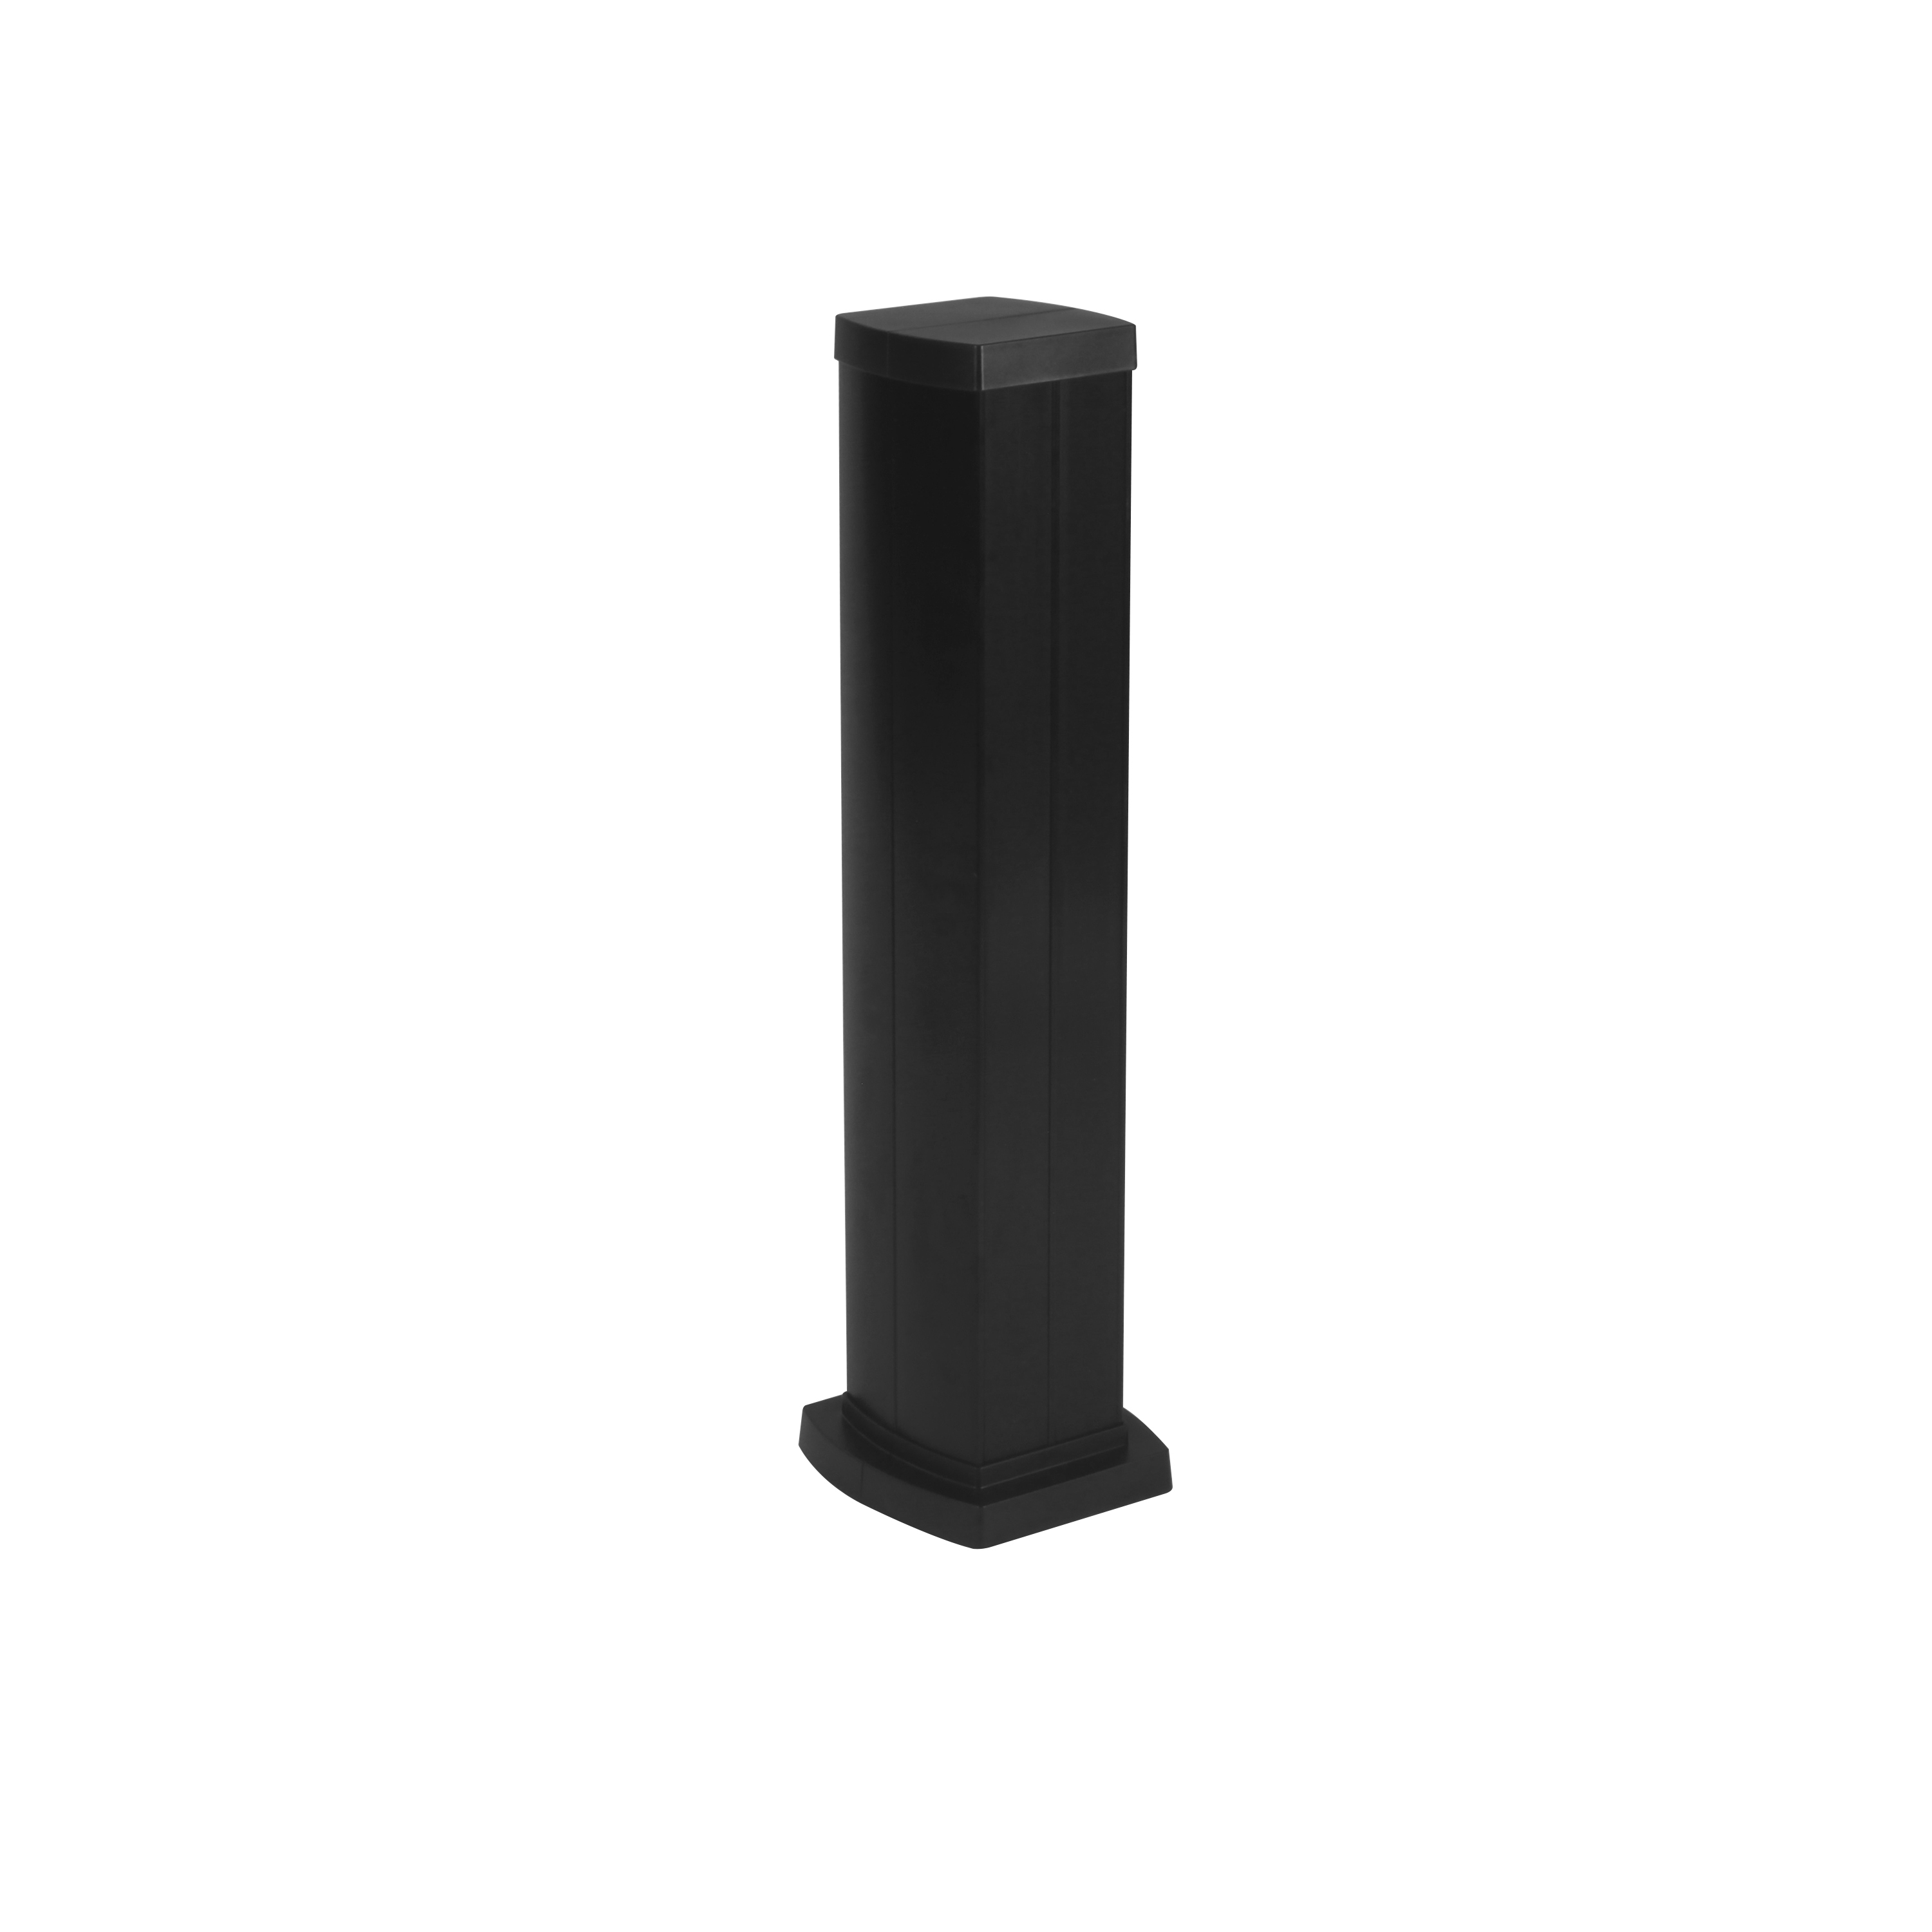 Snap-On мини-колонна алюминиевая с крышкой из пластика 4 секции, высота 0,68 метра, цвет черный 653045 Legrand